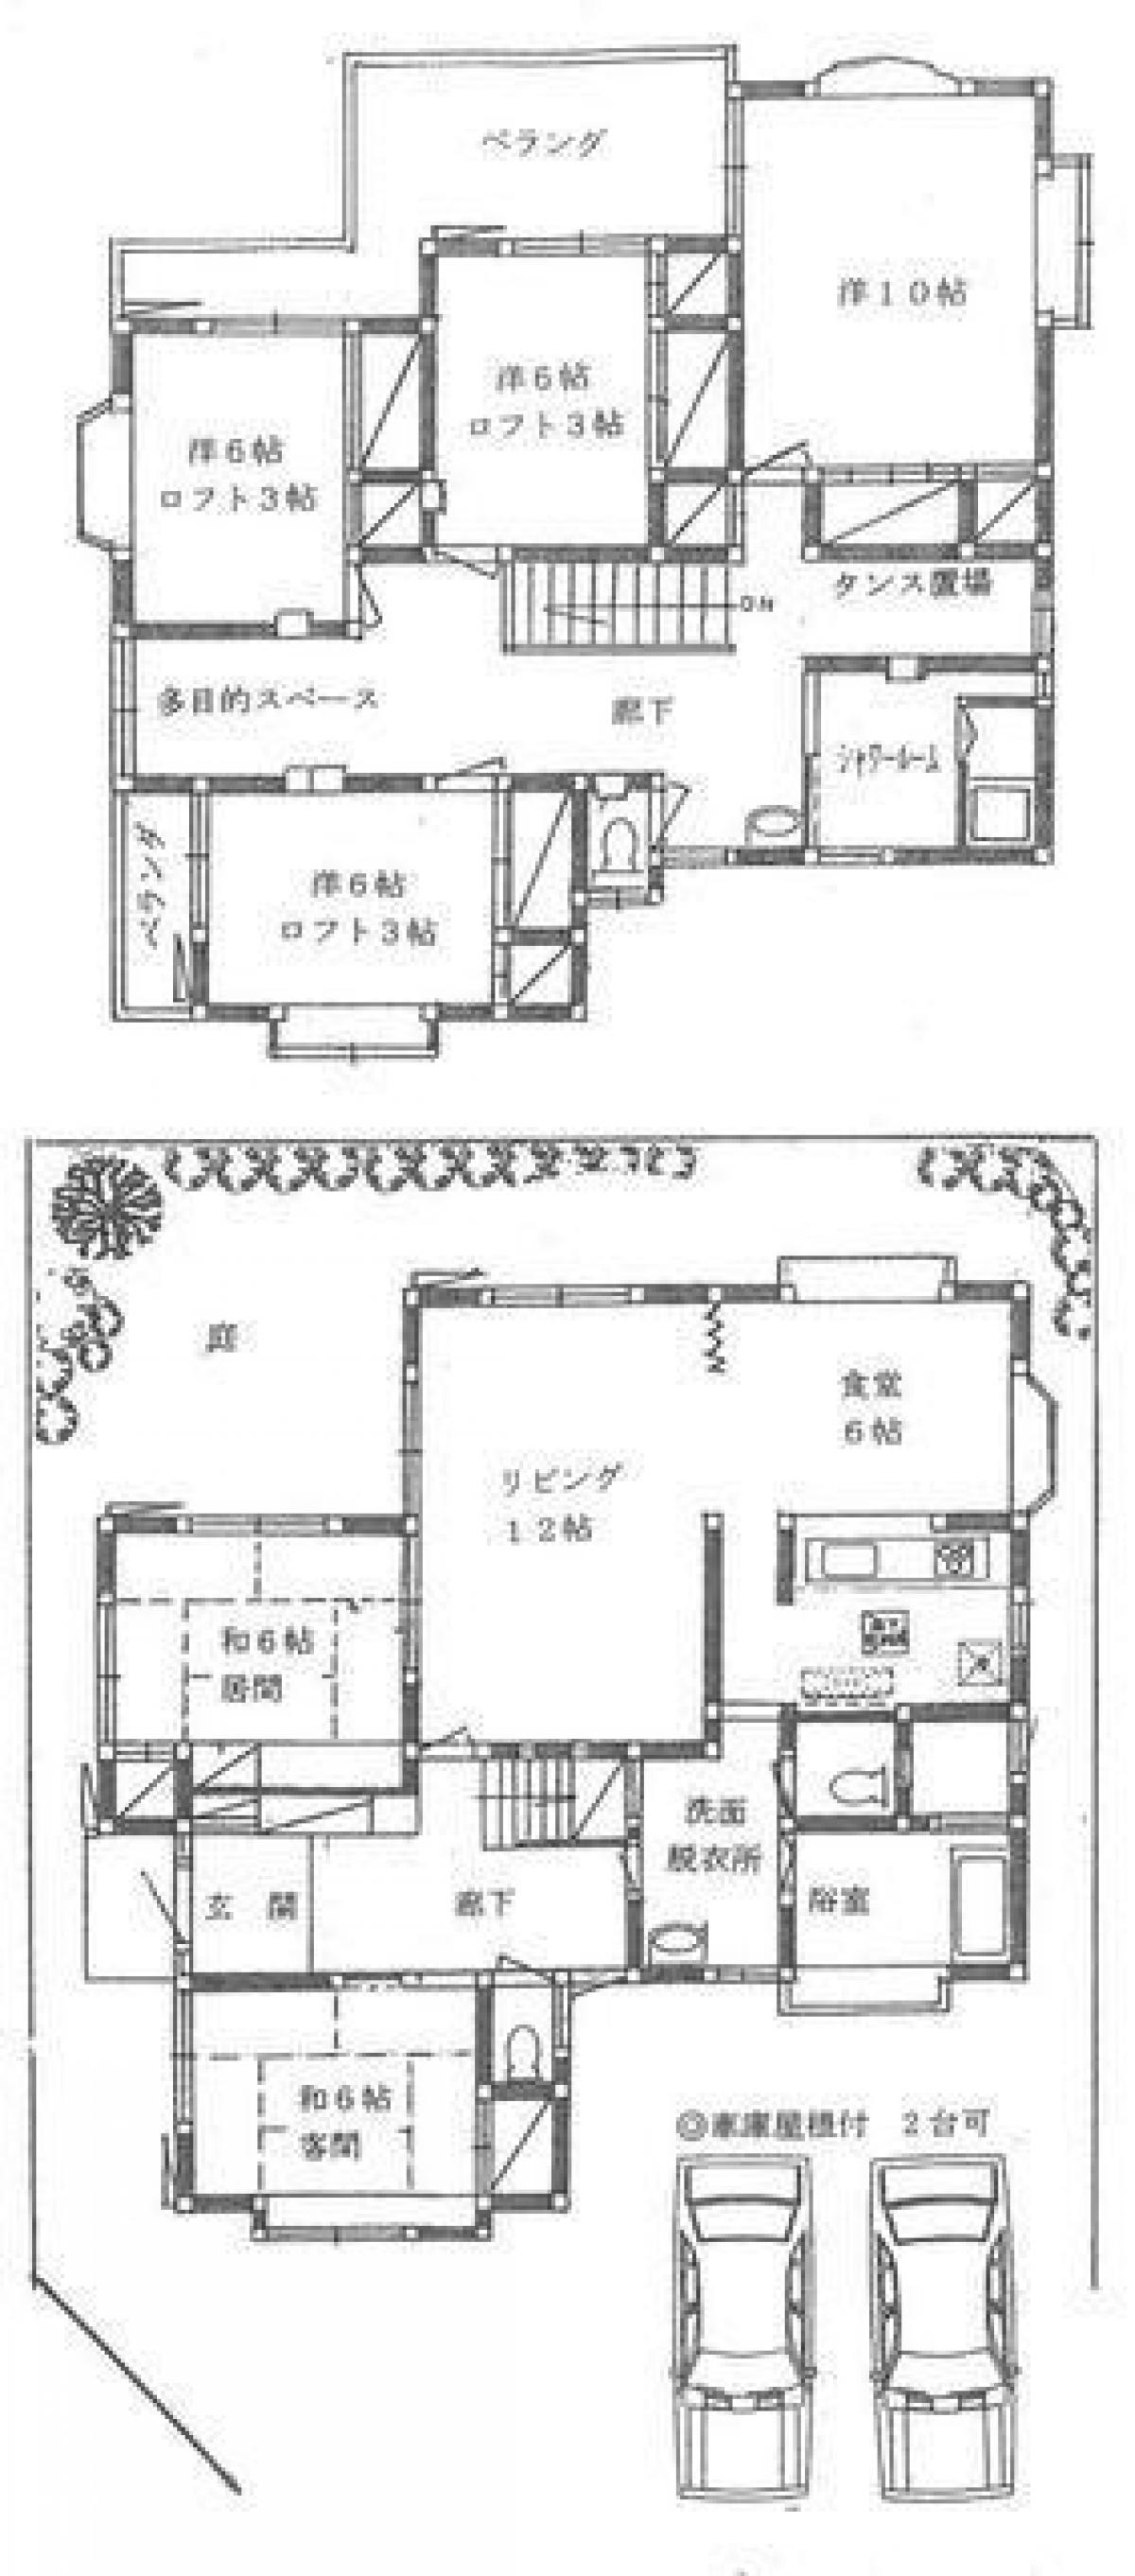 Picture of Home For Sale in Niiza Shi, Saitama, Japan